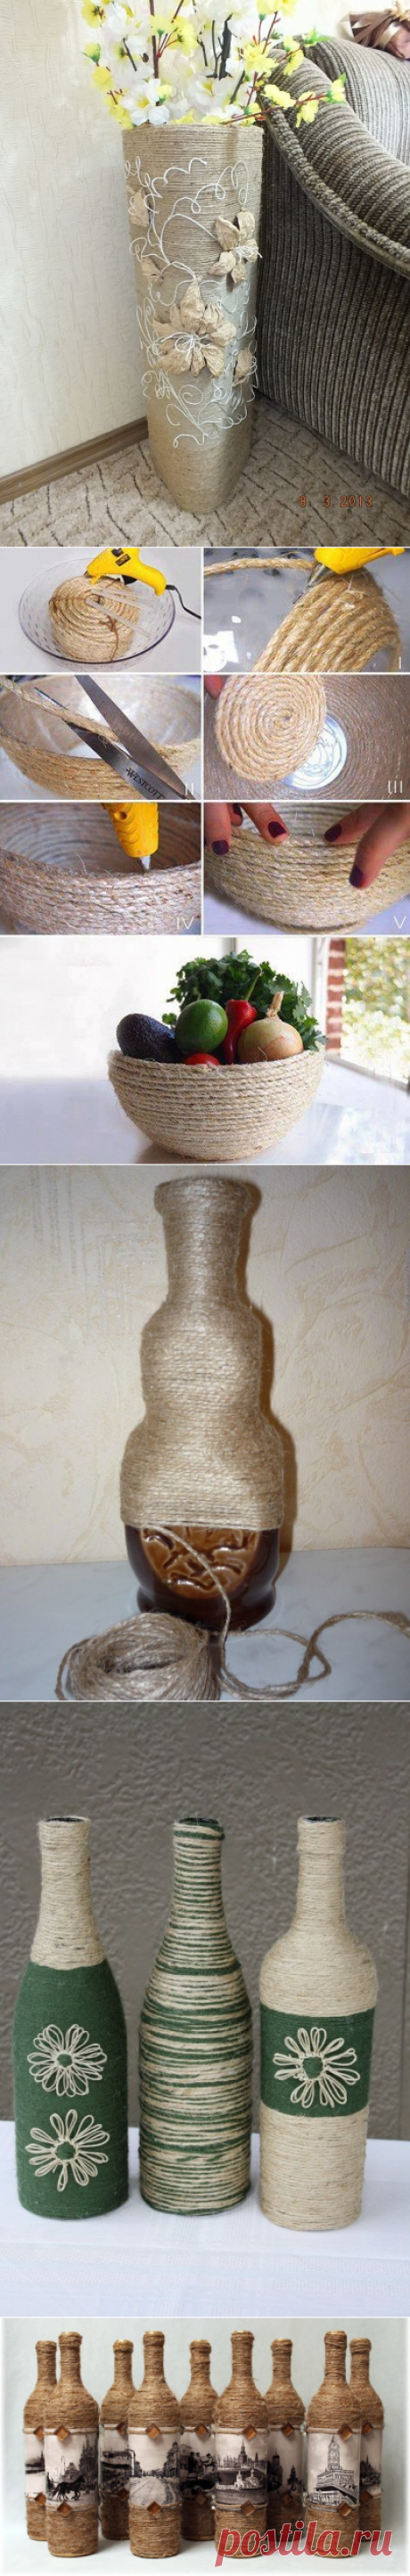 Оригинальное декорирование вазы или бутылки бечевкой — Сделай сам, идеи для творчества - DIY Ideas